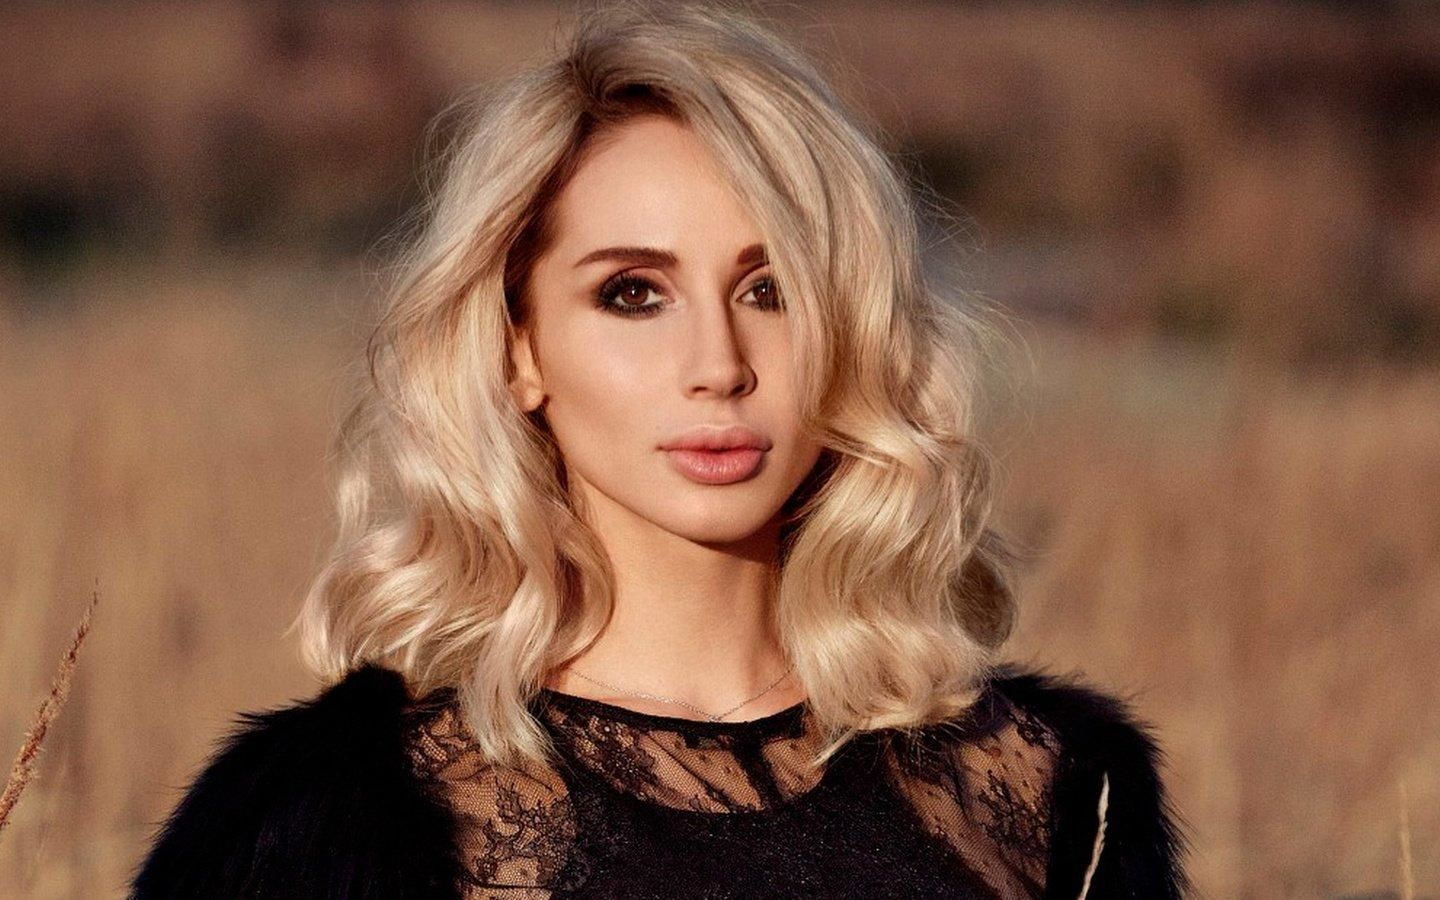 Інстаграм опальної співачки Світлани Лободи було заблоковано в Україні